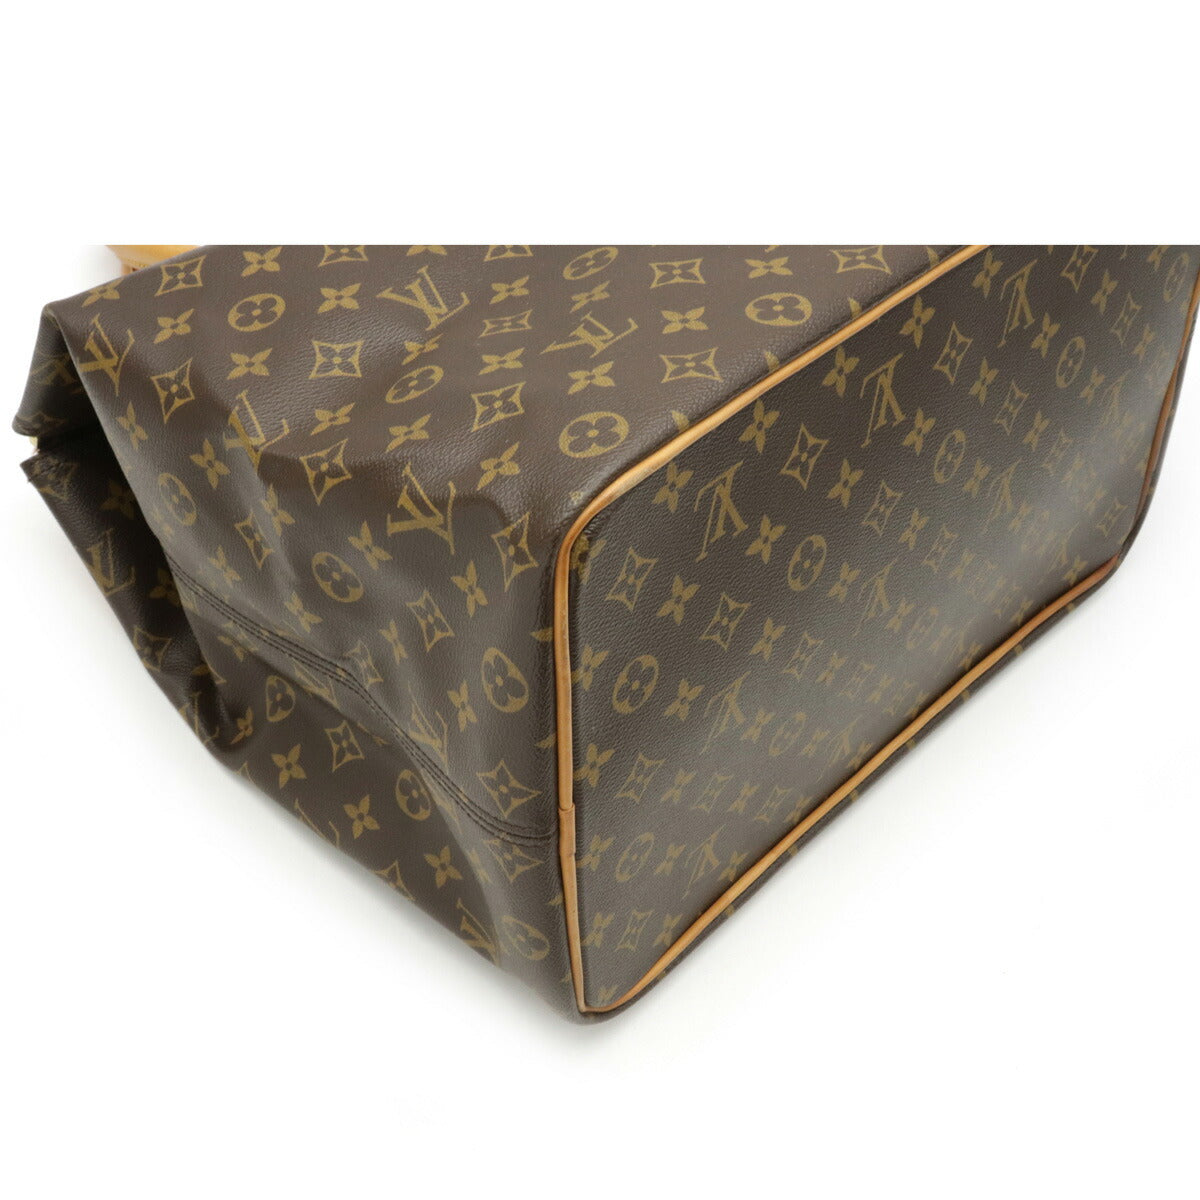 Louis Vuitton Greenwich PM Boston Bag M50215 – Timeless Vintage Company